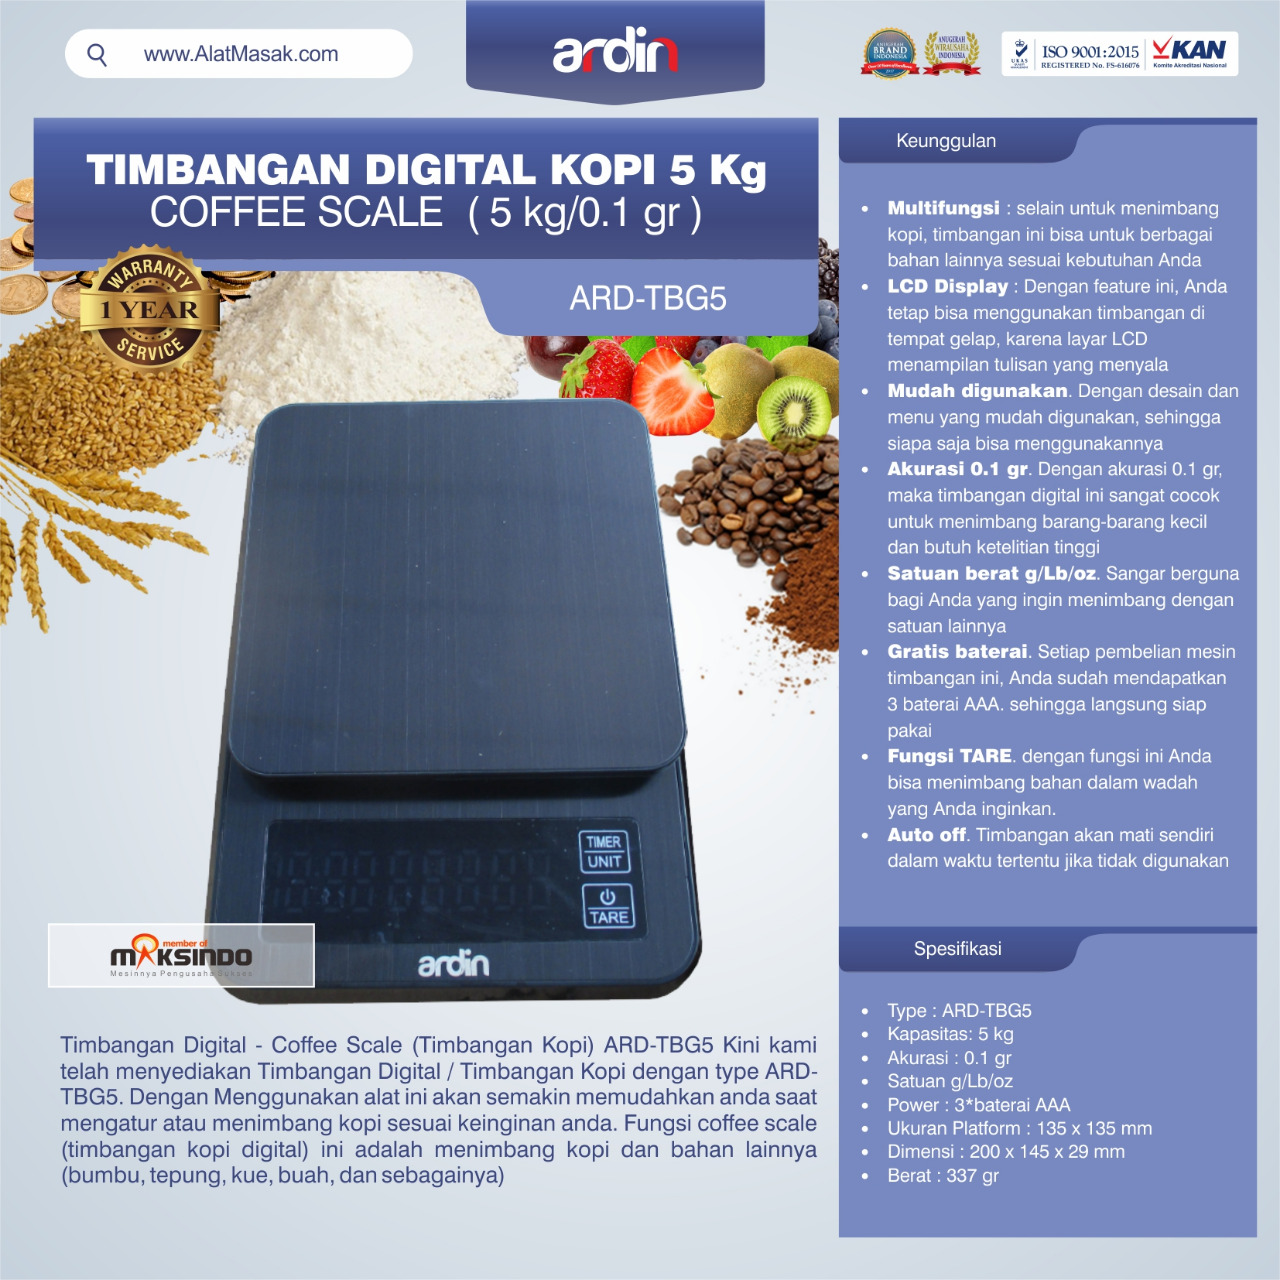 Jual Timbangan Digital Kopi 5 kg ARD-TBG5 (coffee scale) di Semarang